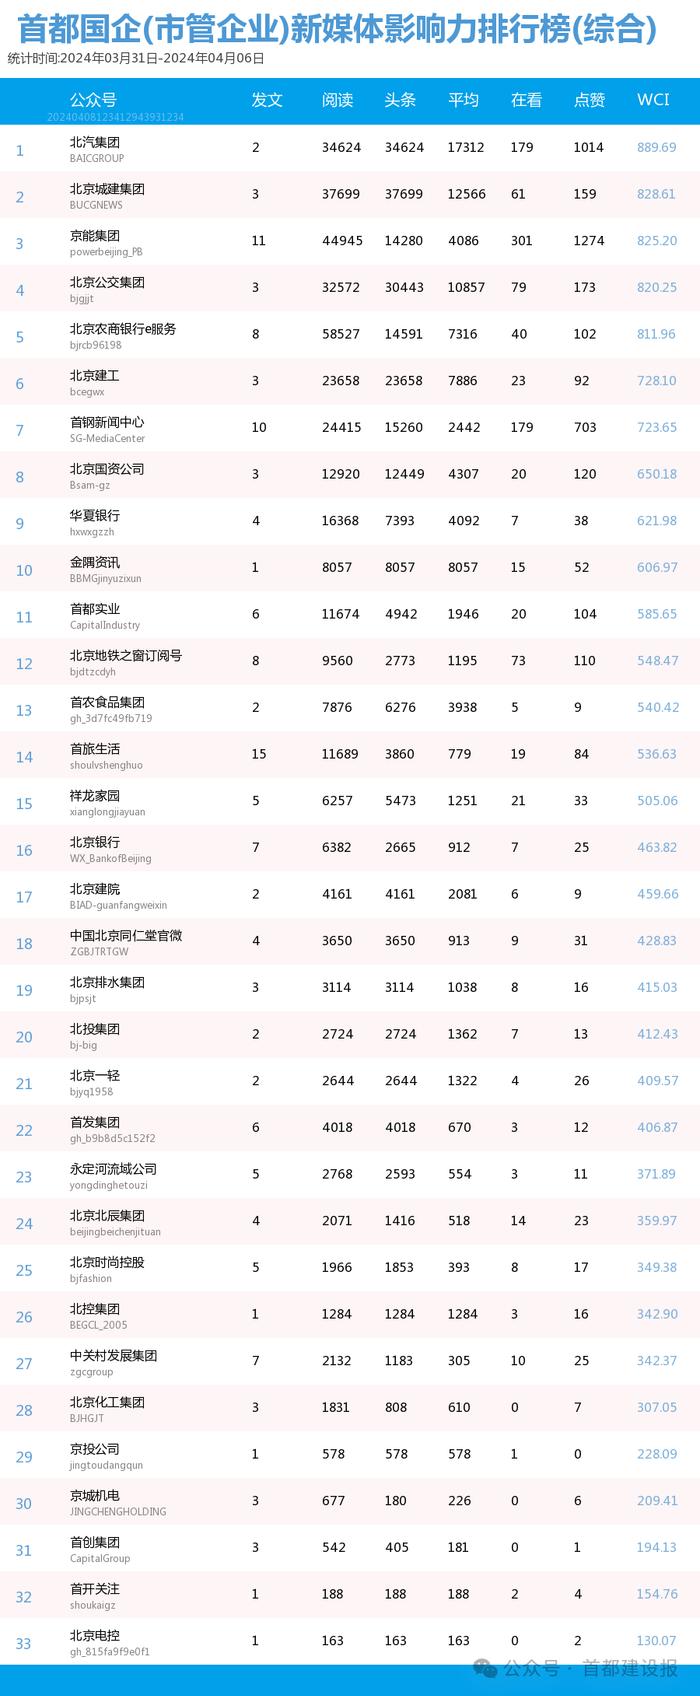 【北京国企新媒体影响力排行榜】3月月榜及周榜(3.31-4.6)第402期